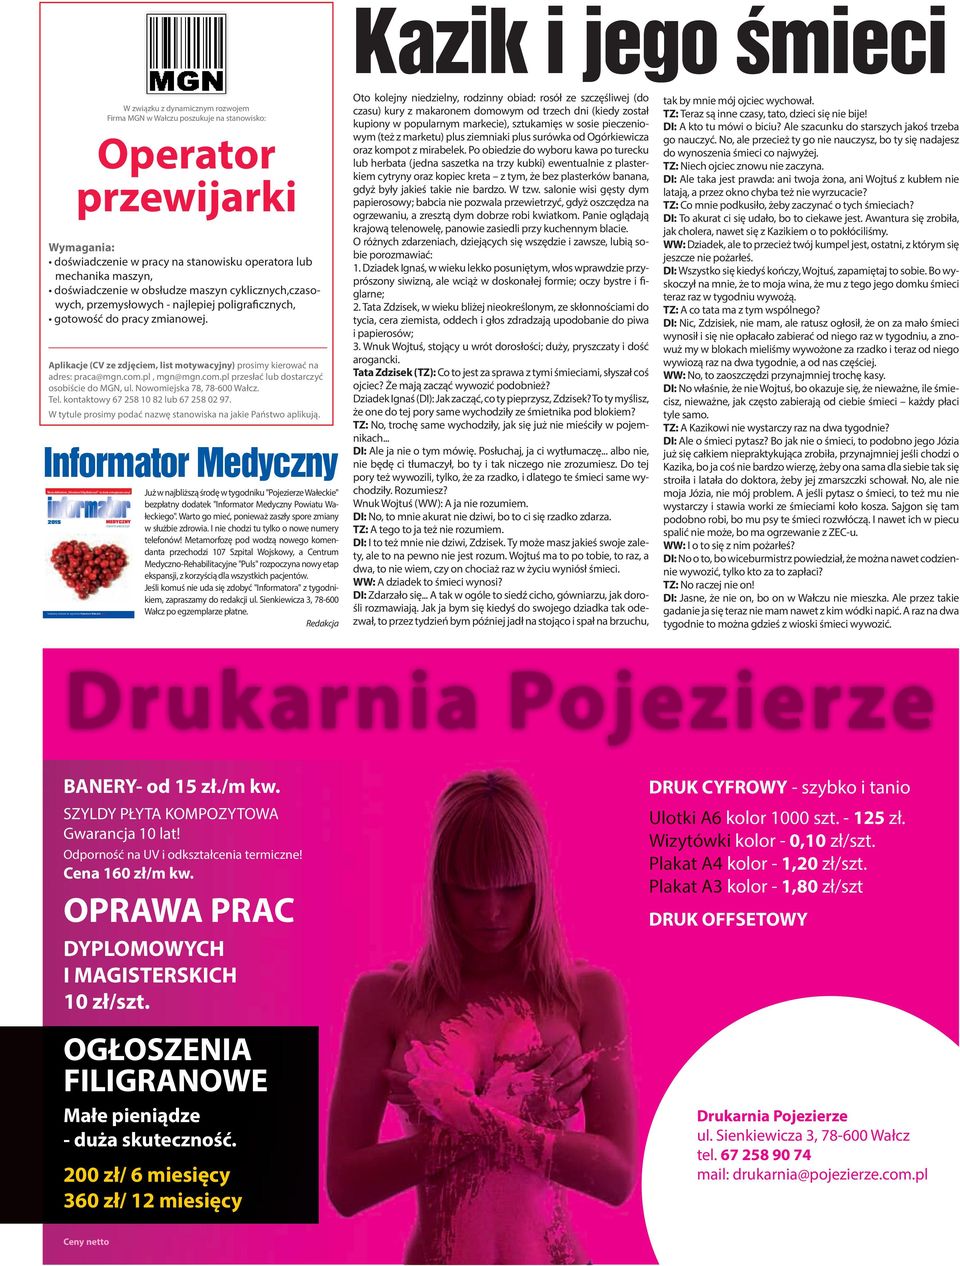 Aplikacje (CV ze zdjęciem, list motywacyjny) prosimy kierować na adres: praca@mgn.com.pl, mgn@mgn.com.pl przesłać lub dostarczyć osobiście do MGN, ul. Nowomiejska 78, 78-600 Wałcz. Tel.